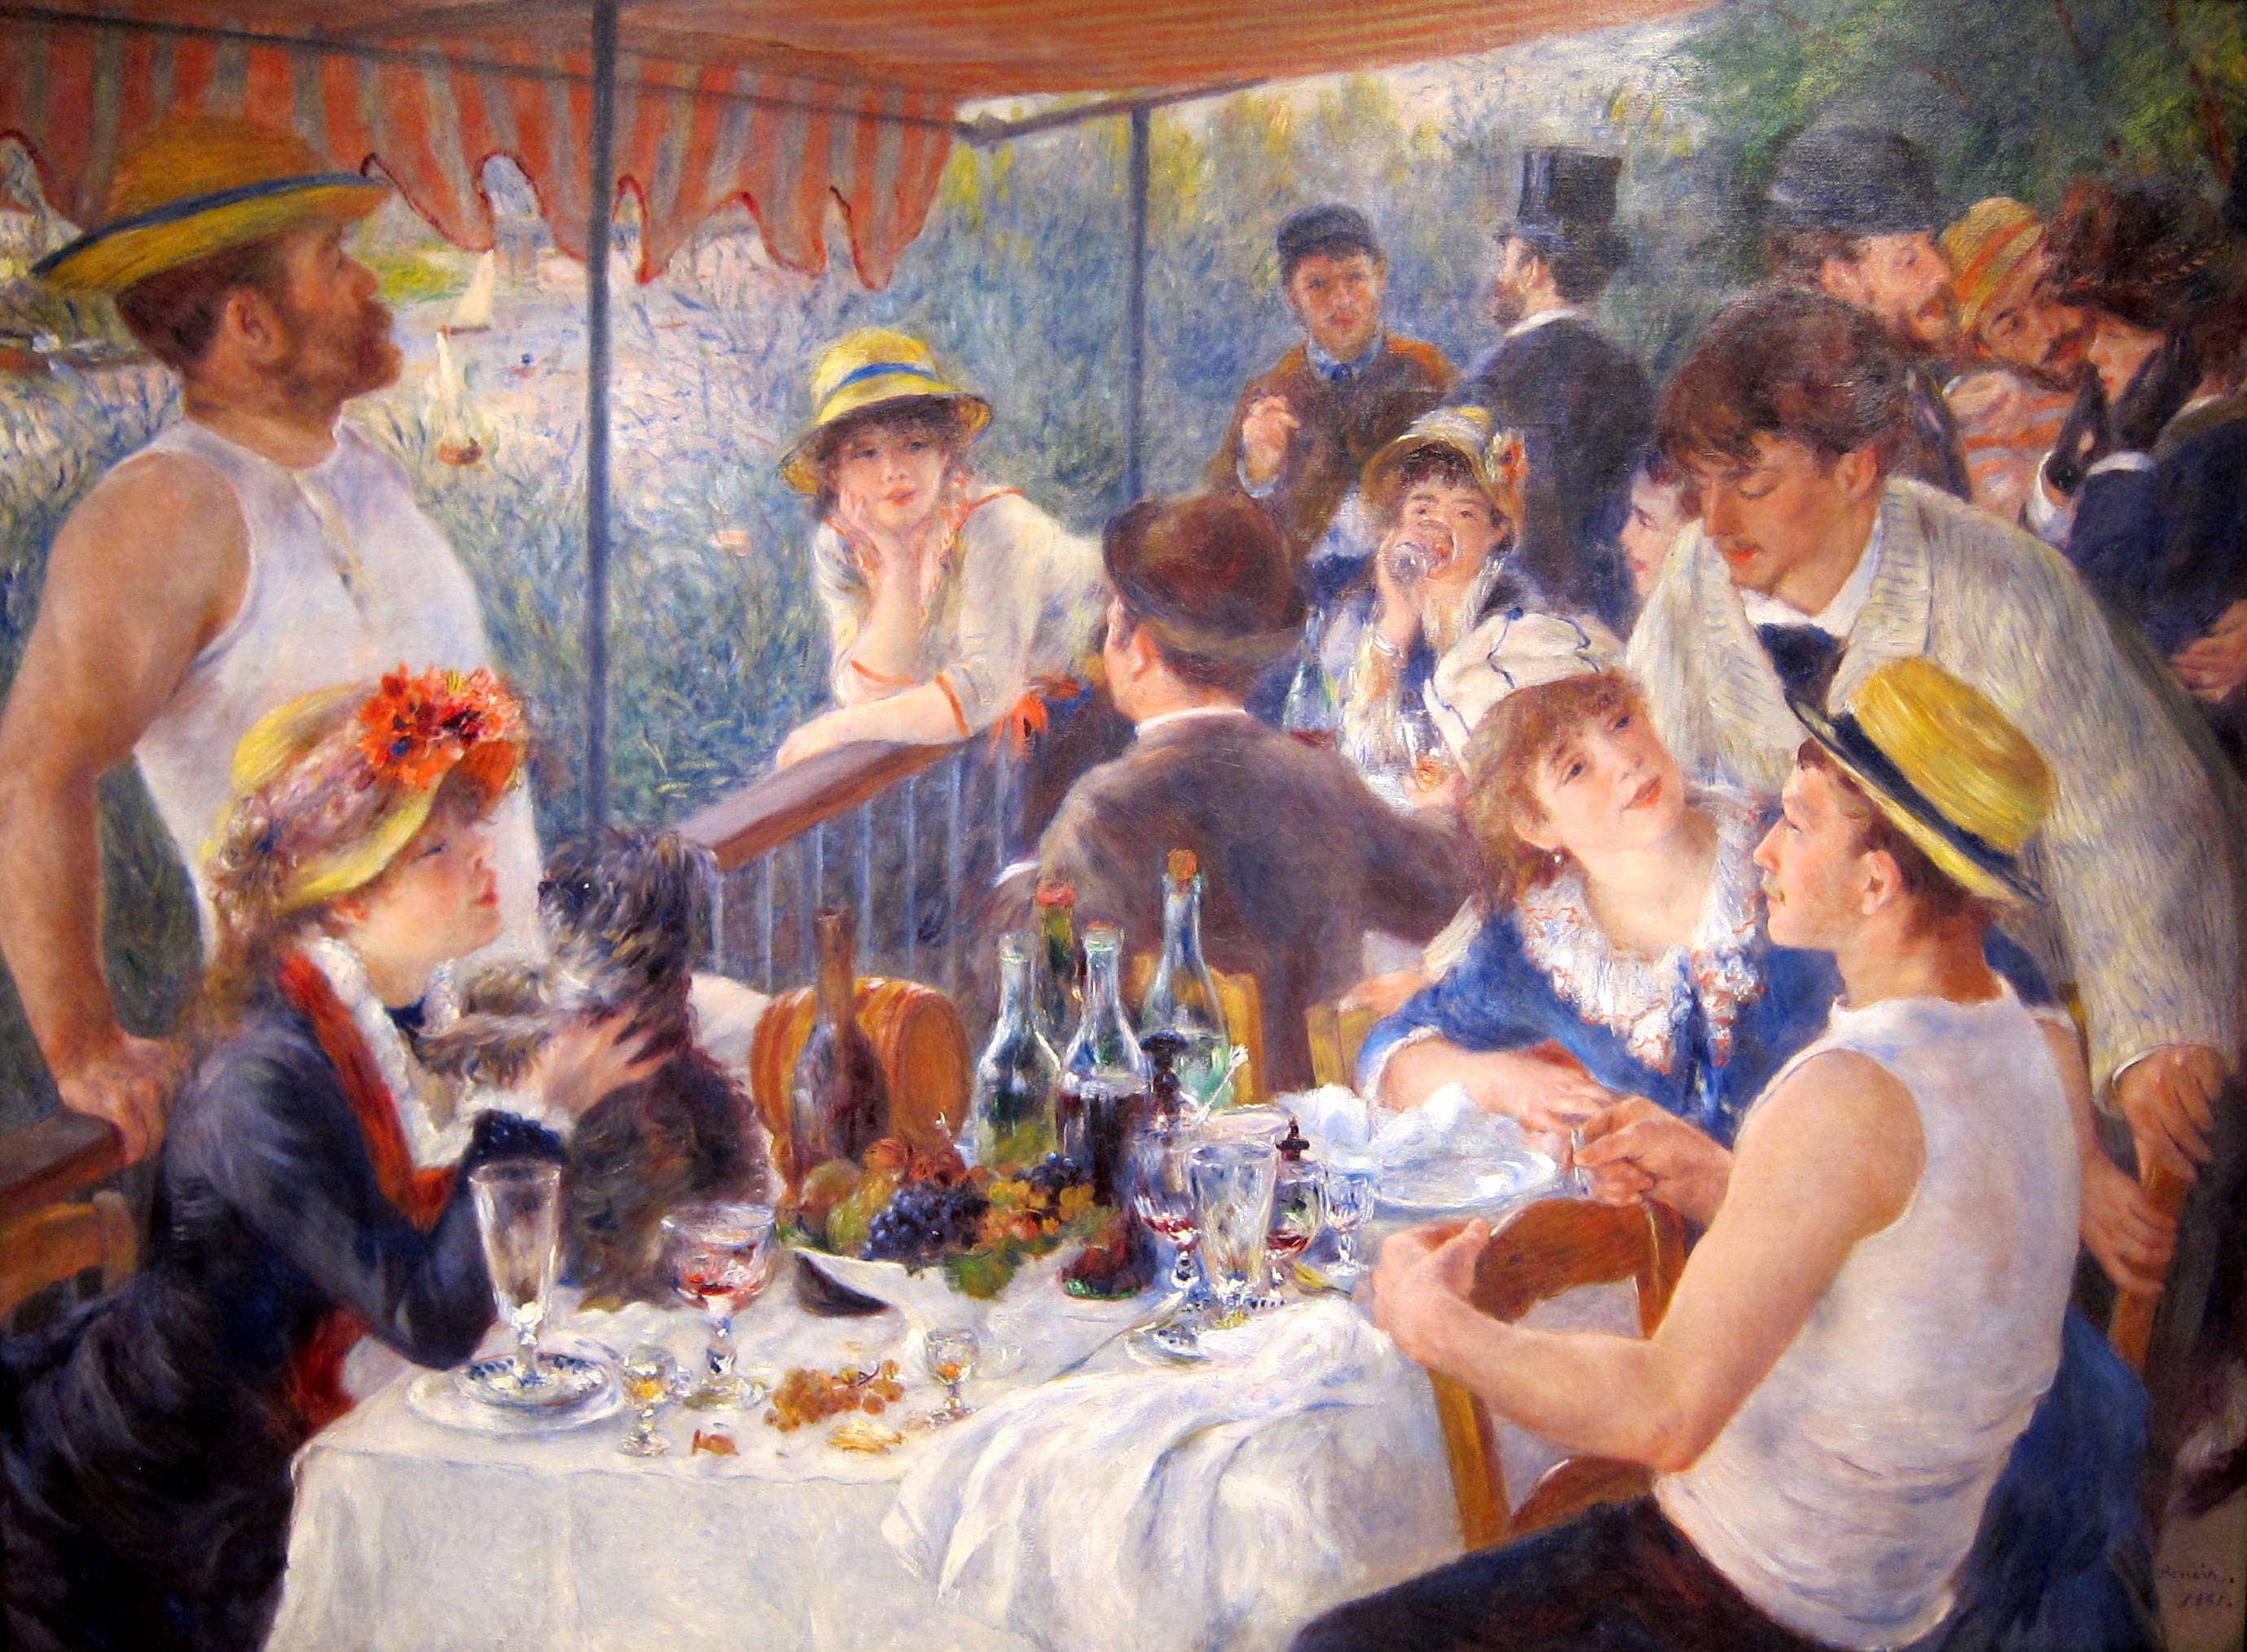 O Almoço dos Barqueiros by Pierre-Auguste Renoir - 1880 - 129.9 × 172.7 cm 